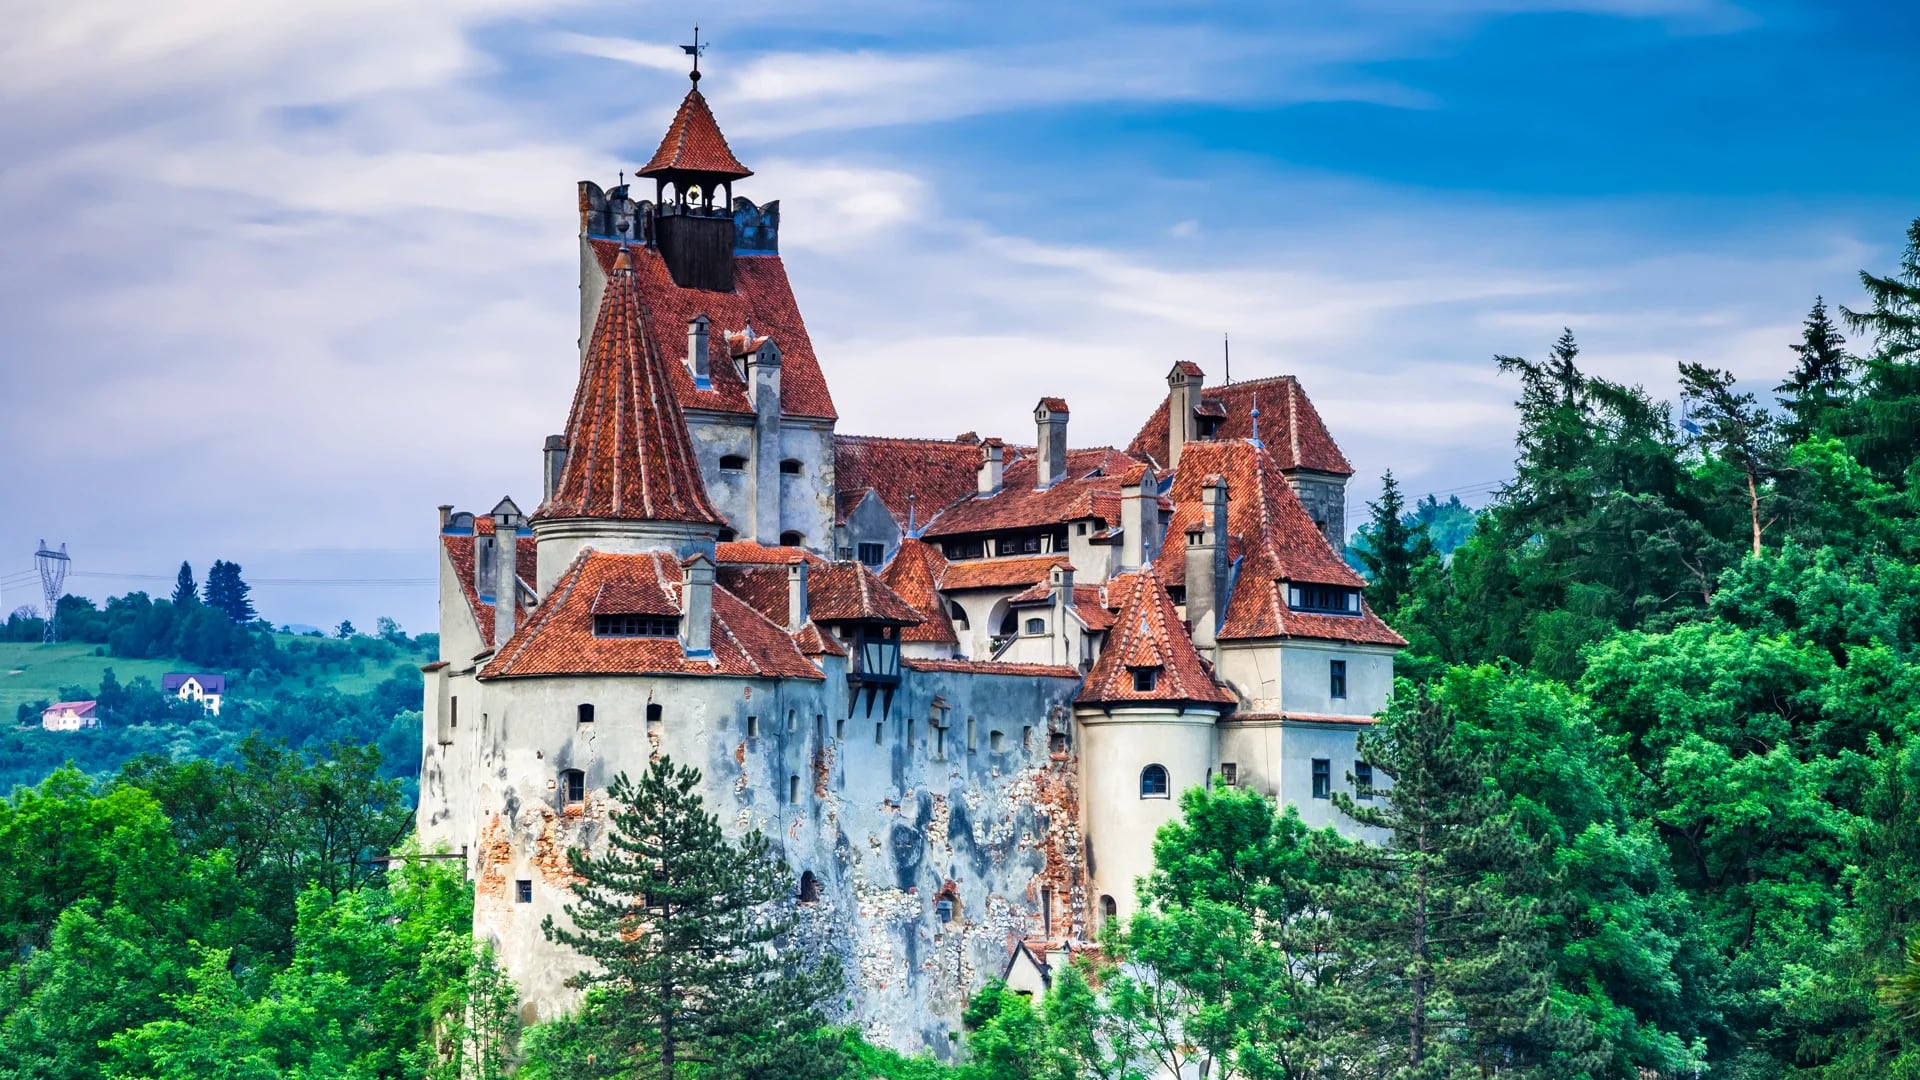 El castillo Bran conocido como el de Drácula es uno de los monumentos más visitados de Rumania